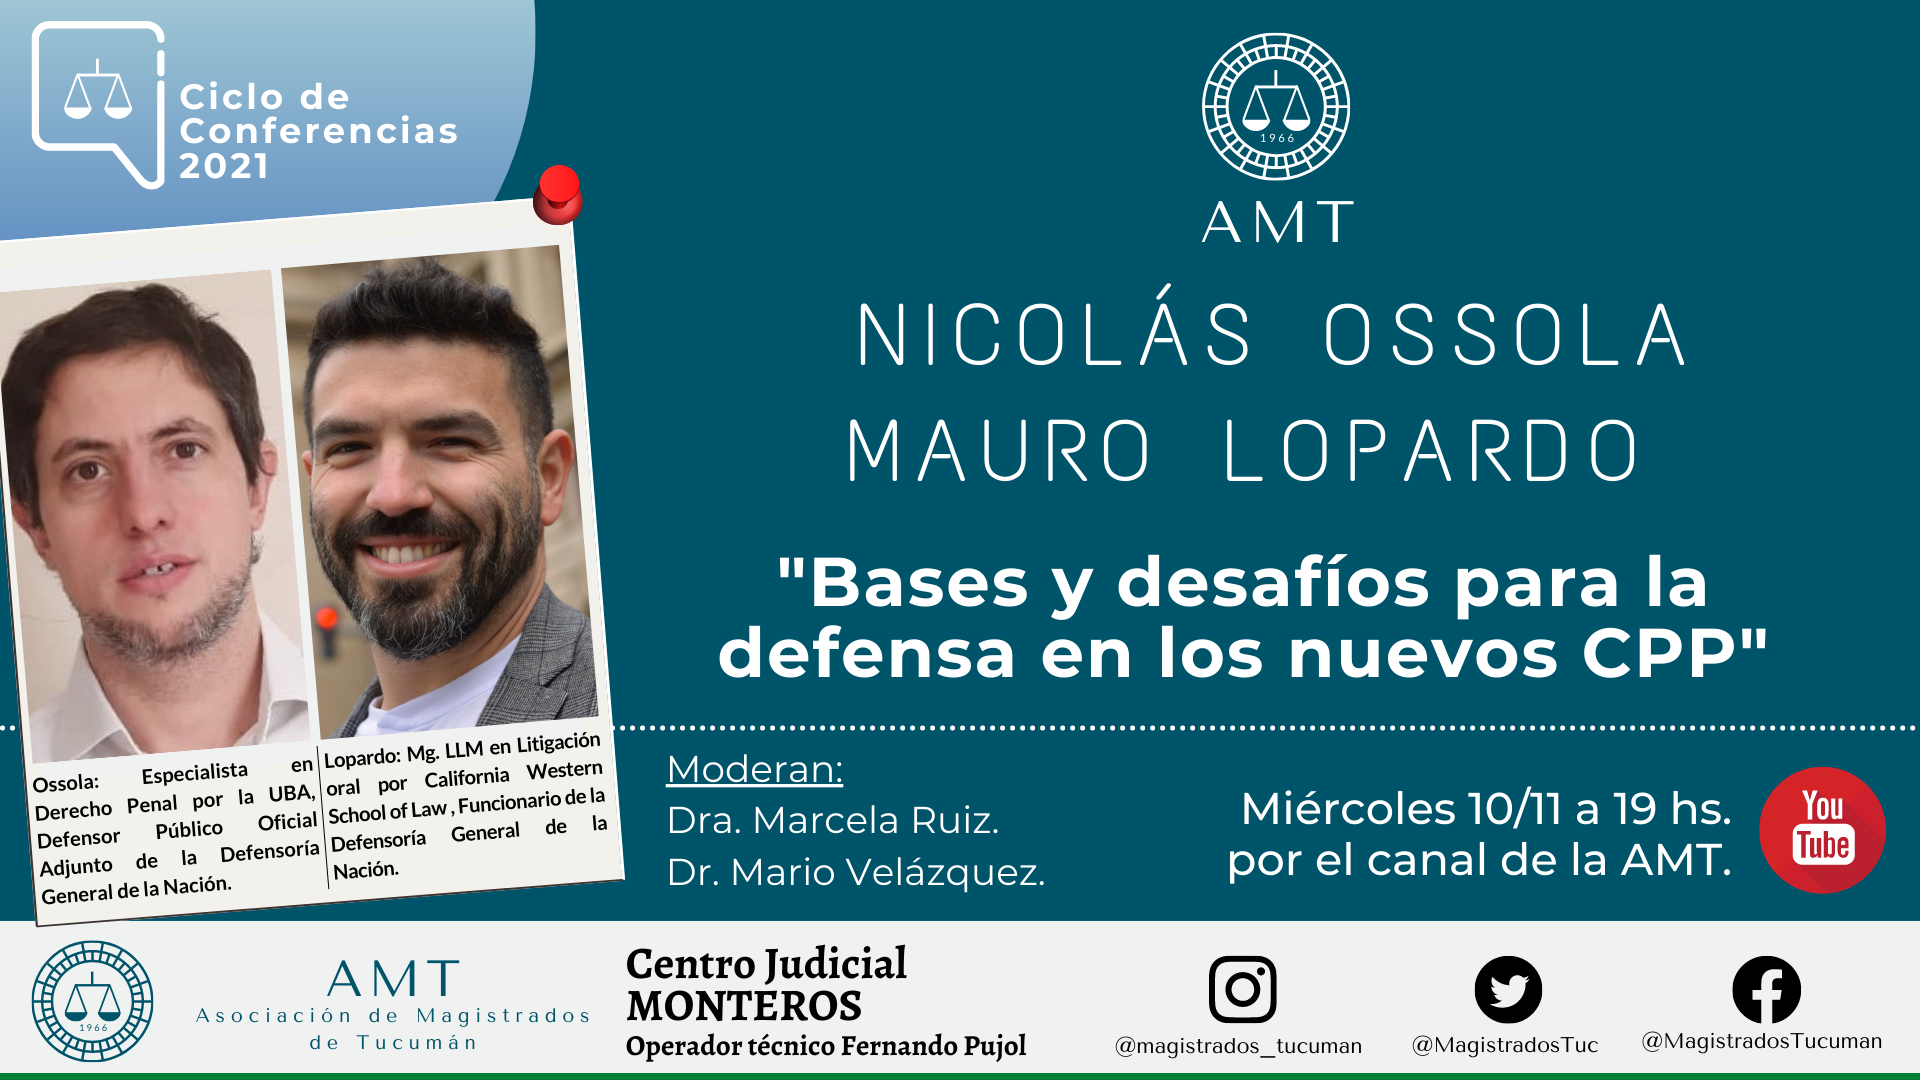 Vuelva a ver la conferencia de Ossola y Lopardo «Bases y desafíos para la defensa en los nuevos CPP”